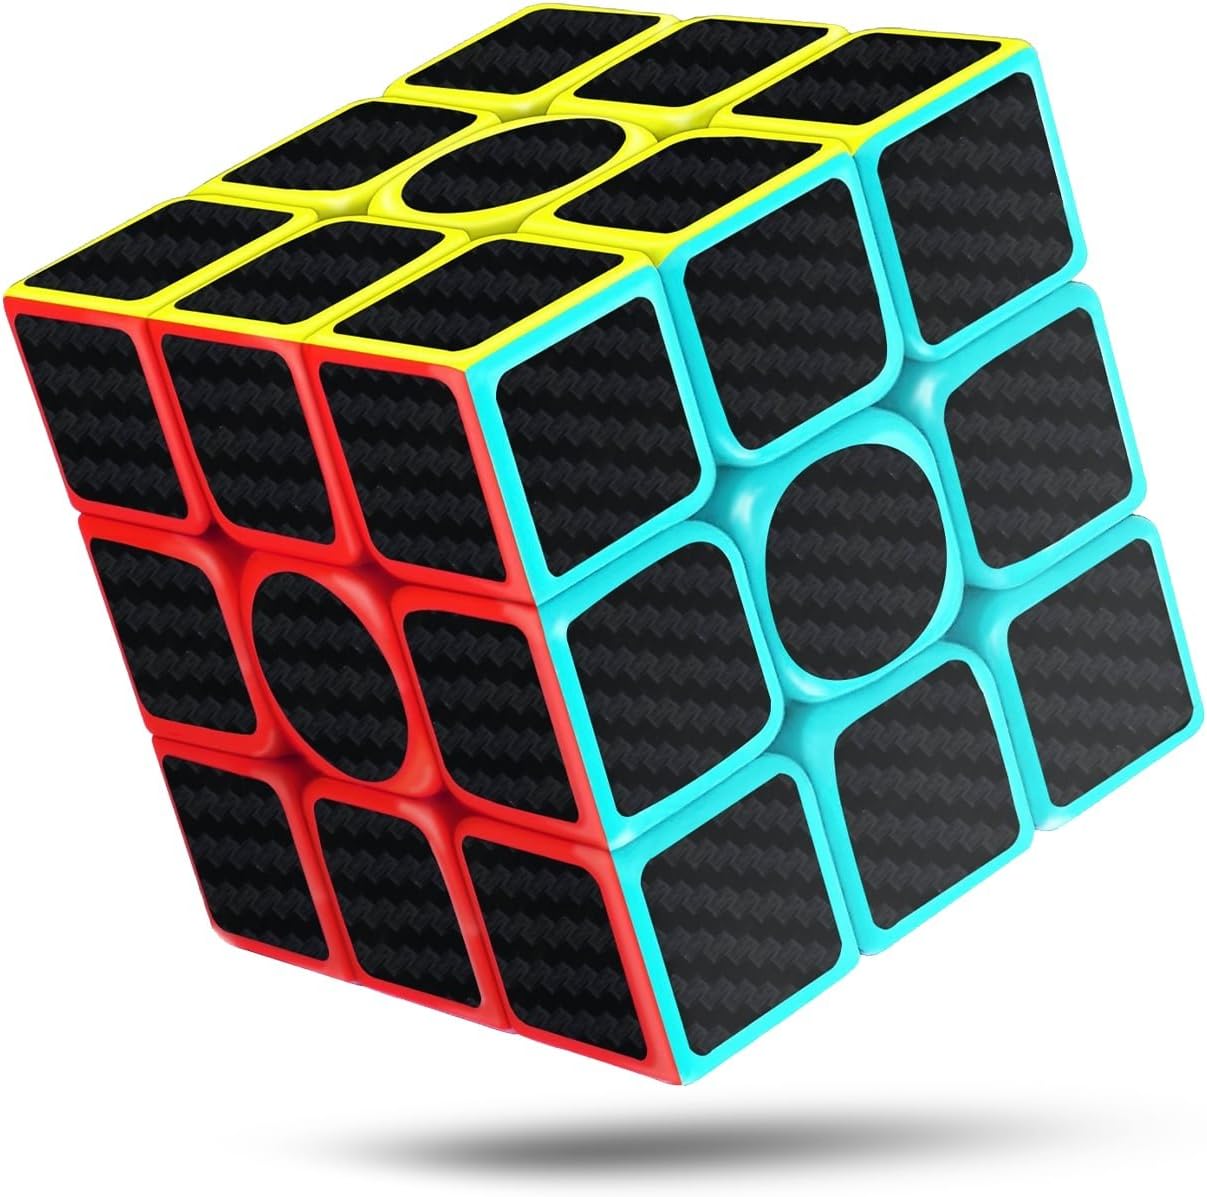 2 X Original Magic Cube 3x3 Authentic Mind Game Puzzle 